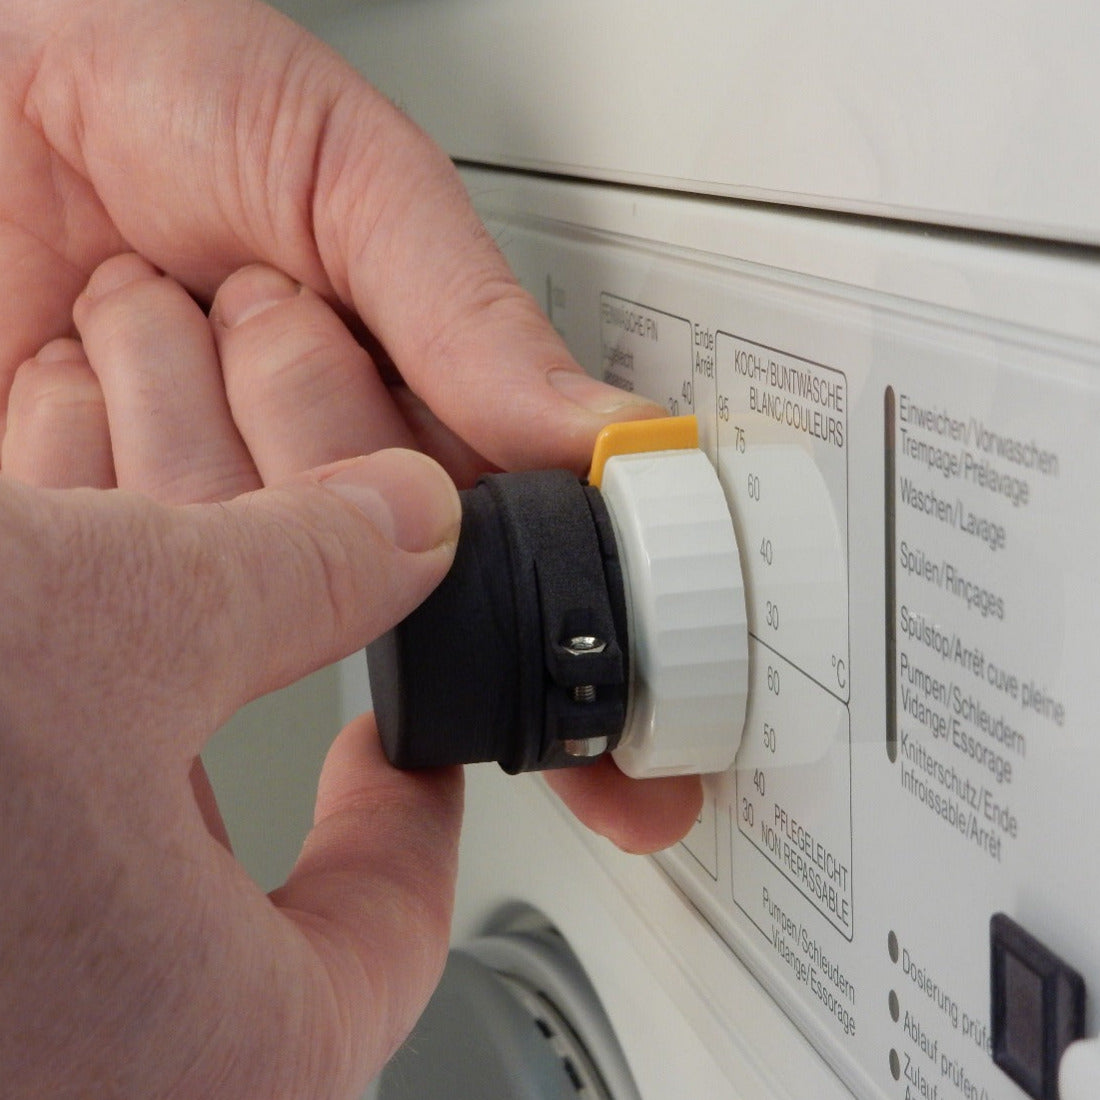 Feelware Audio Bedienknopf der Feelware Audio Nachrüstung für Waschmaschinen an einem  umgerüsteten Waschgerät. Der Bedienknopf wird am vorhandenen Programmwahlknopf befestigt.